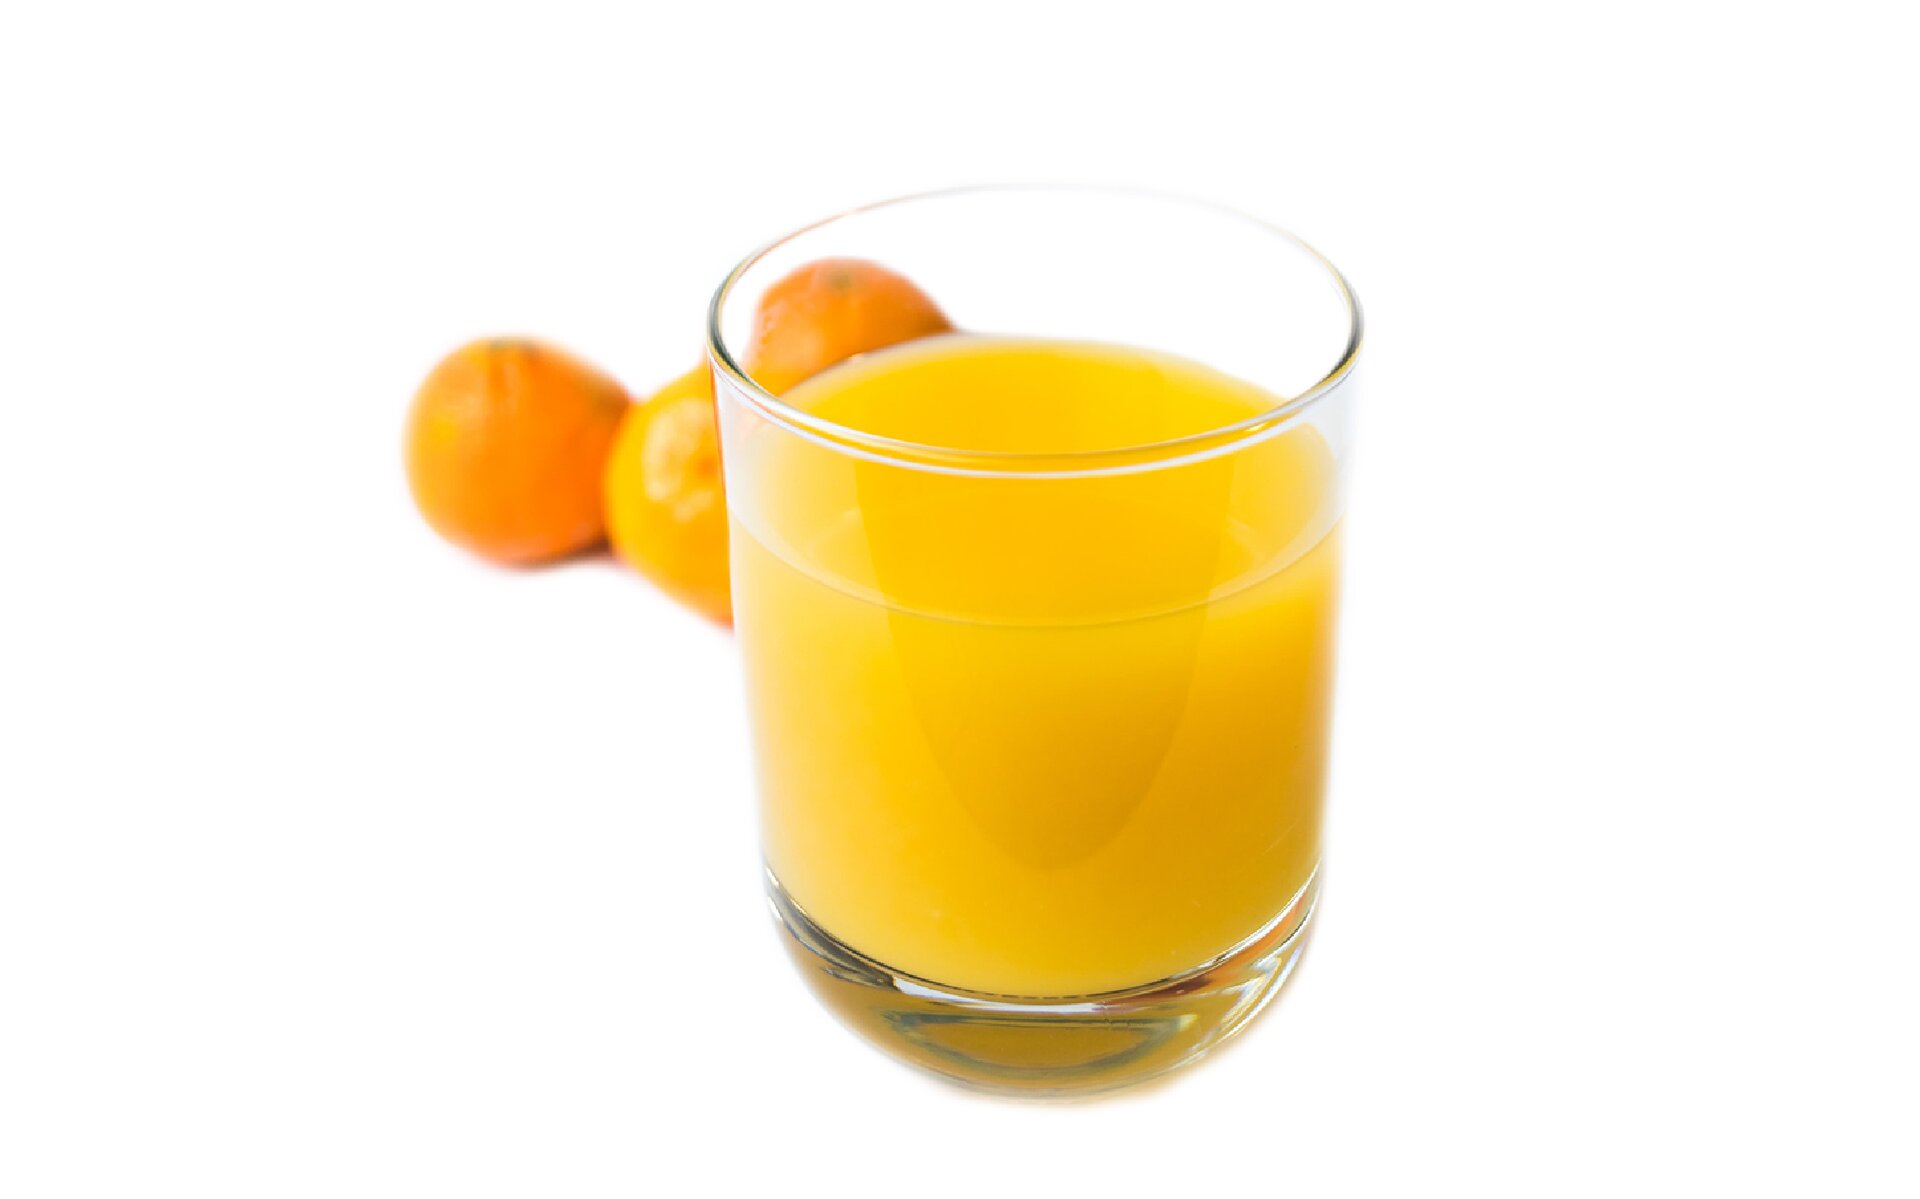 Zdjęcie przedstawia szklankę z sokiem na pierwszym planie, a za nią pomarańcze. 